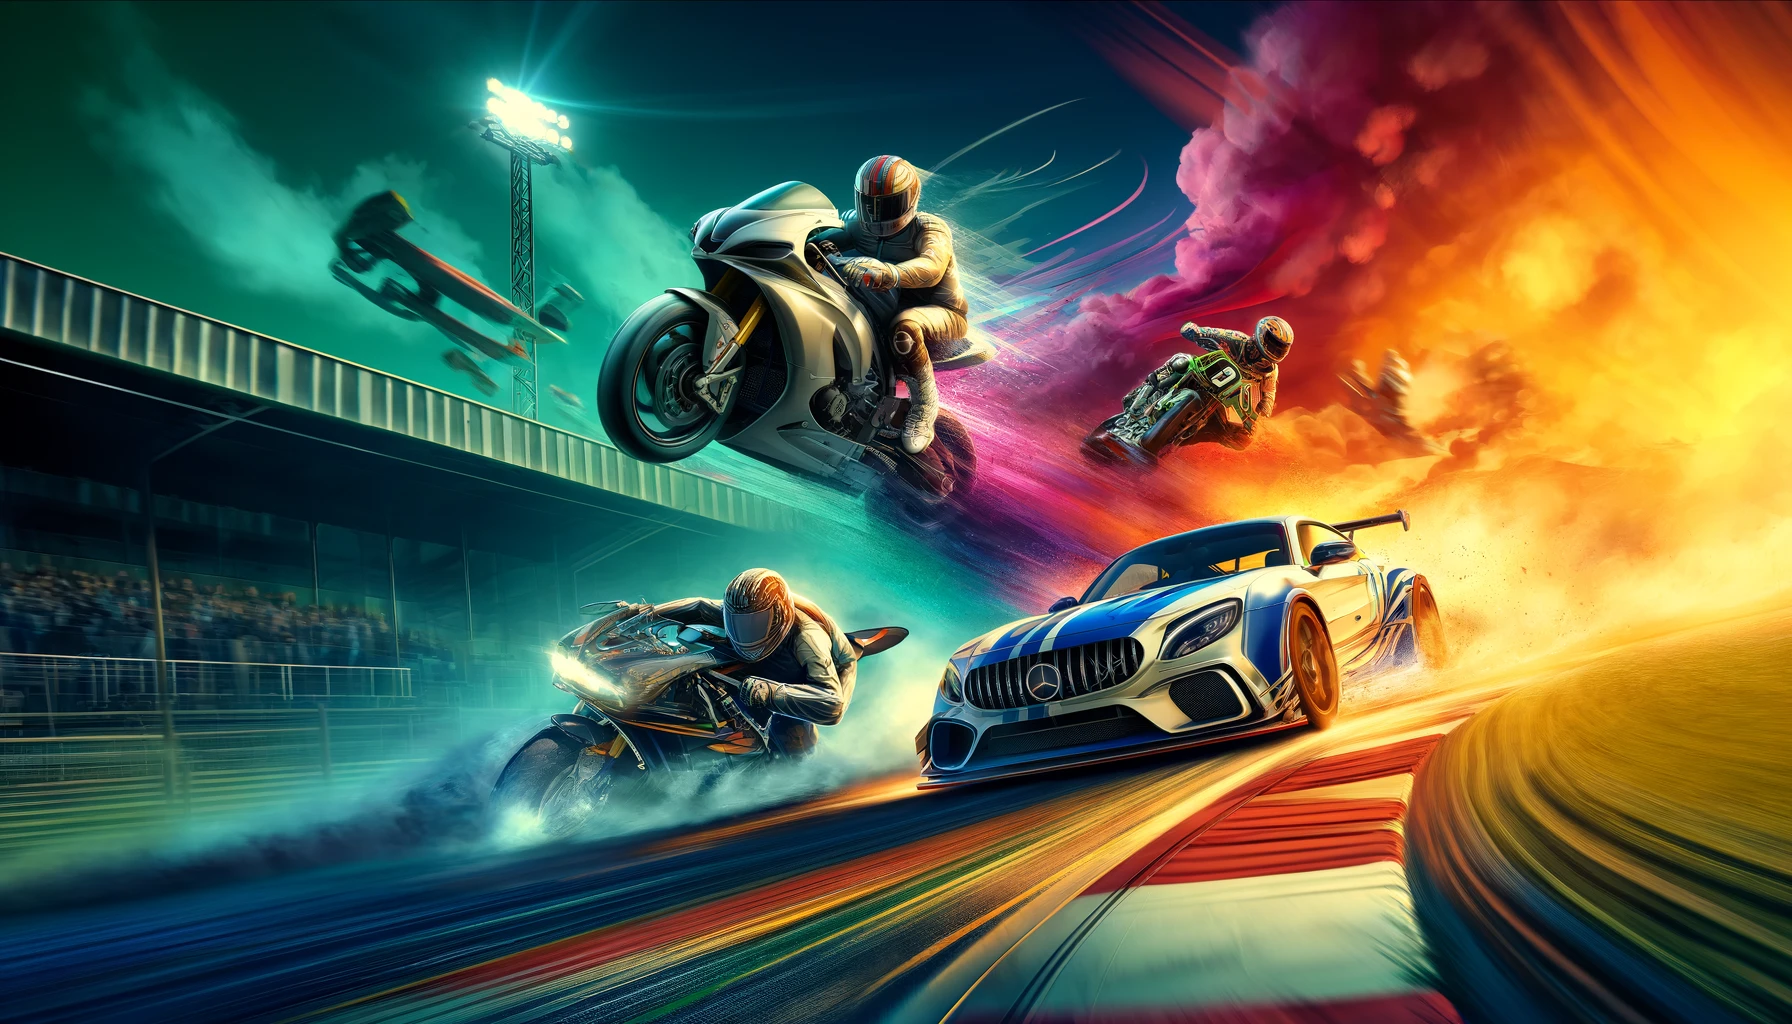  İdeal Yarış Aracını Seçmek: Arabalar vs. Motosikletler vs. Drift Ustaları